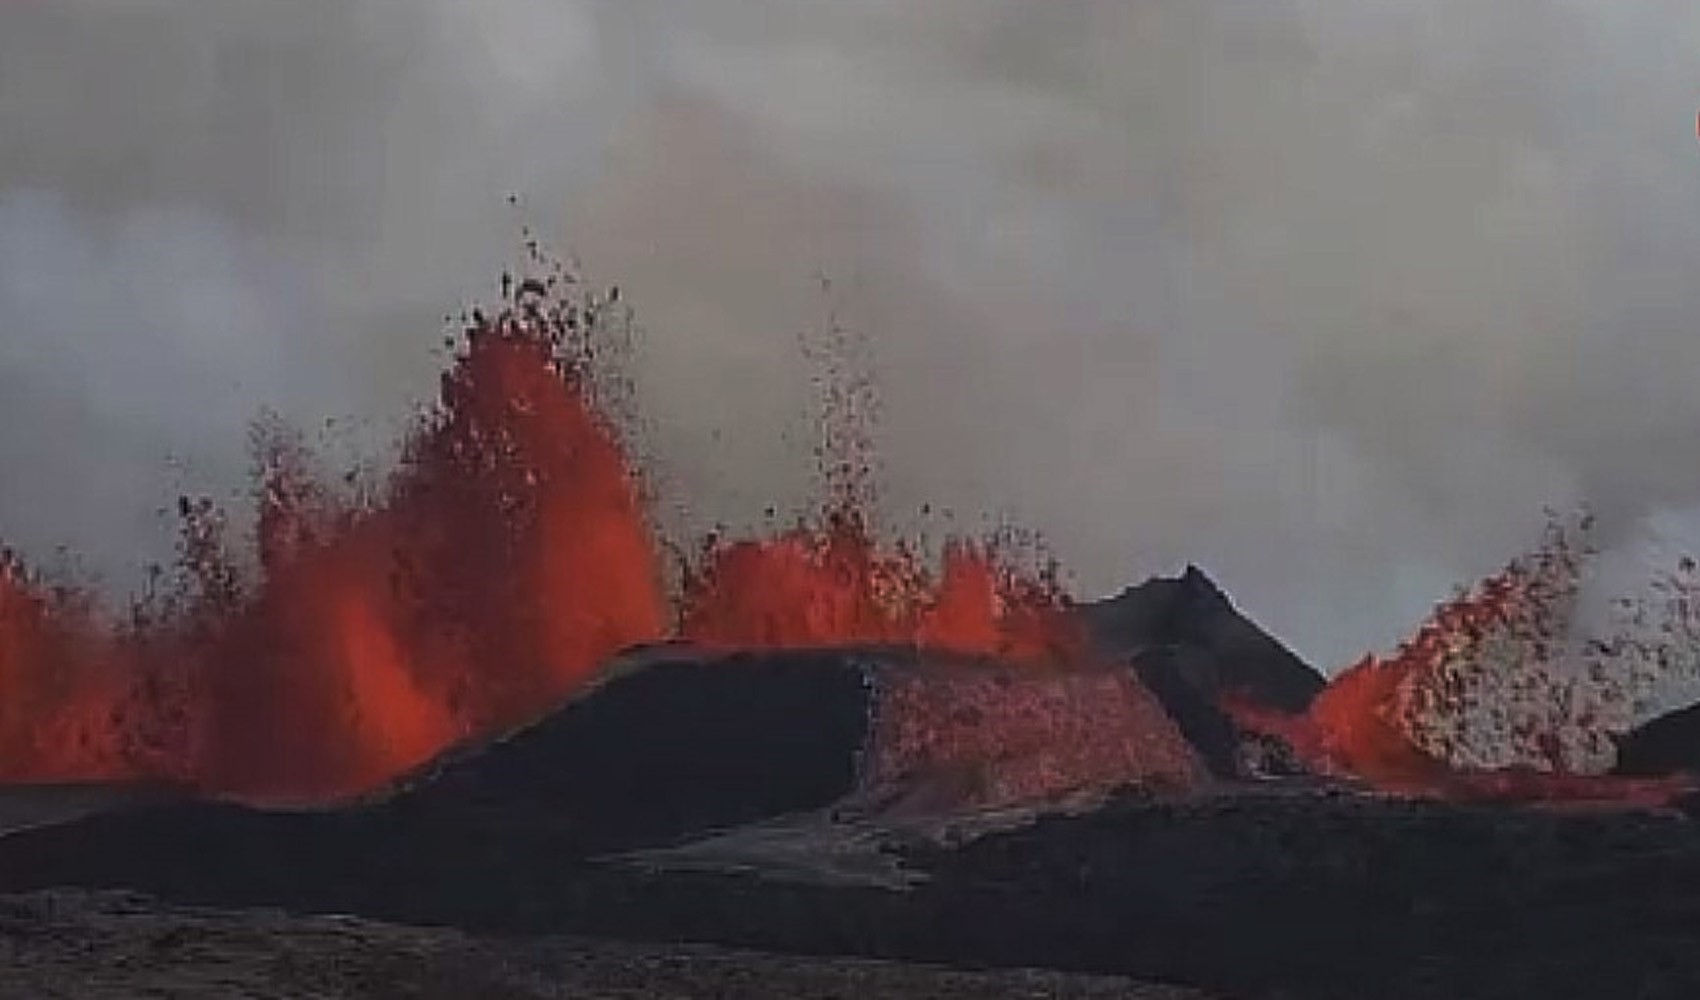 İzlanda'da Aralık'tan bu yana 5. yanardağ patlaması